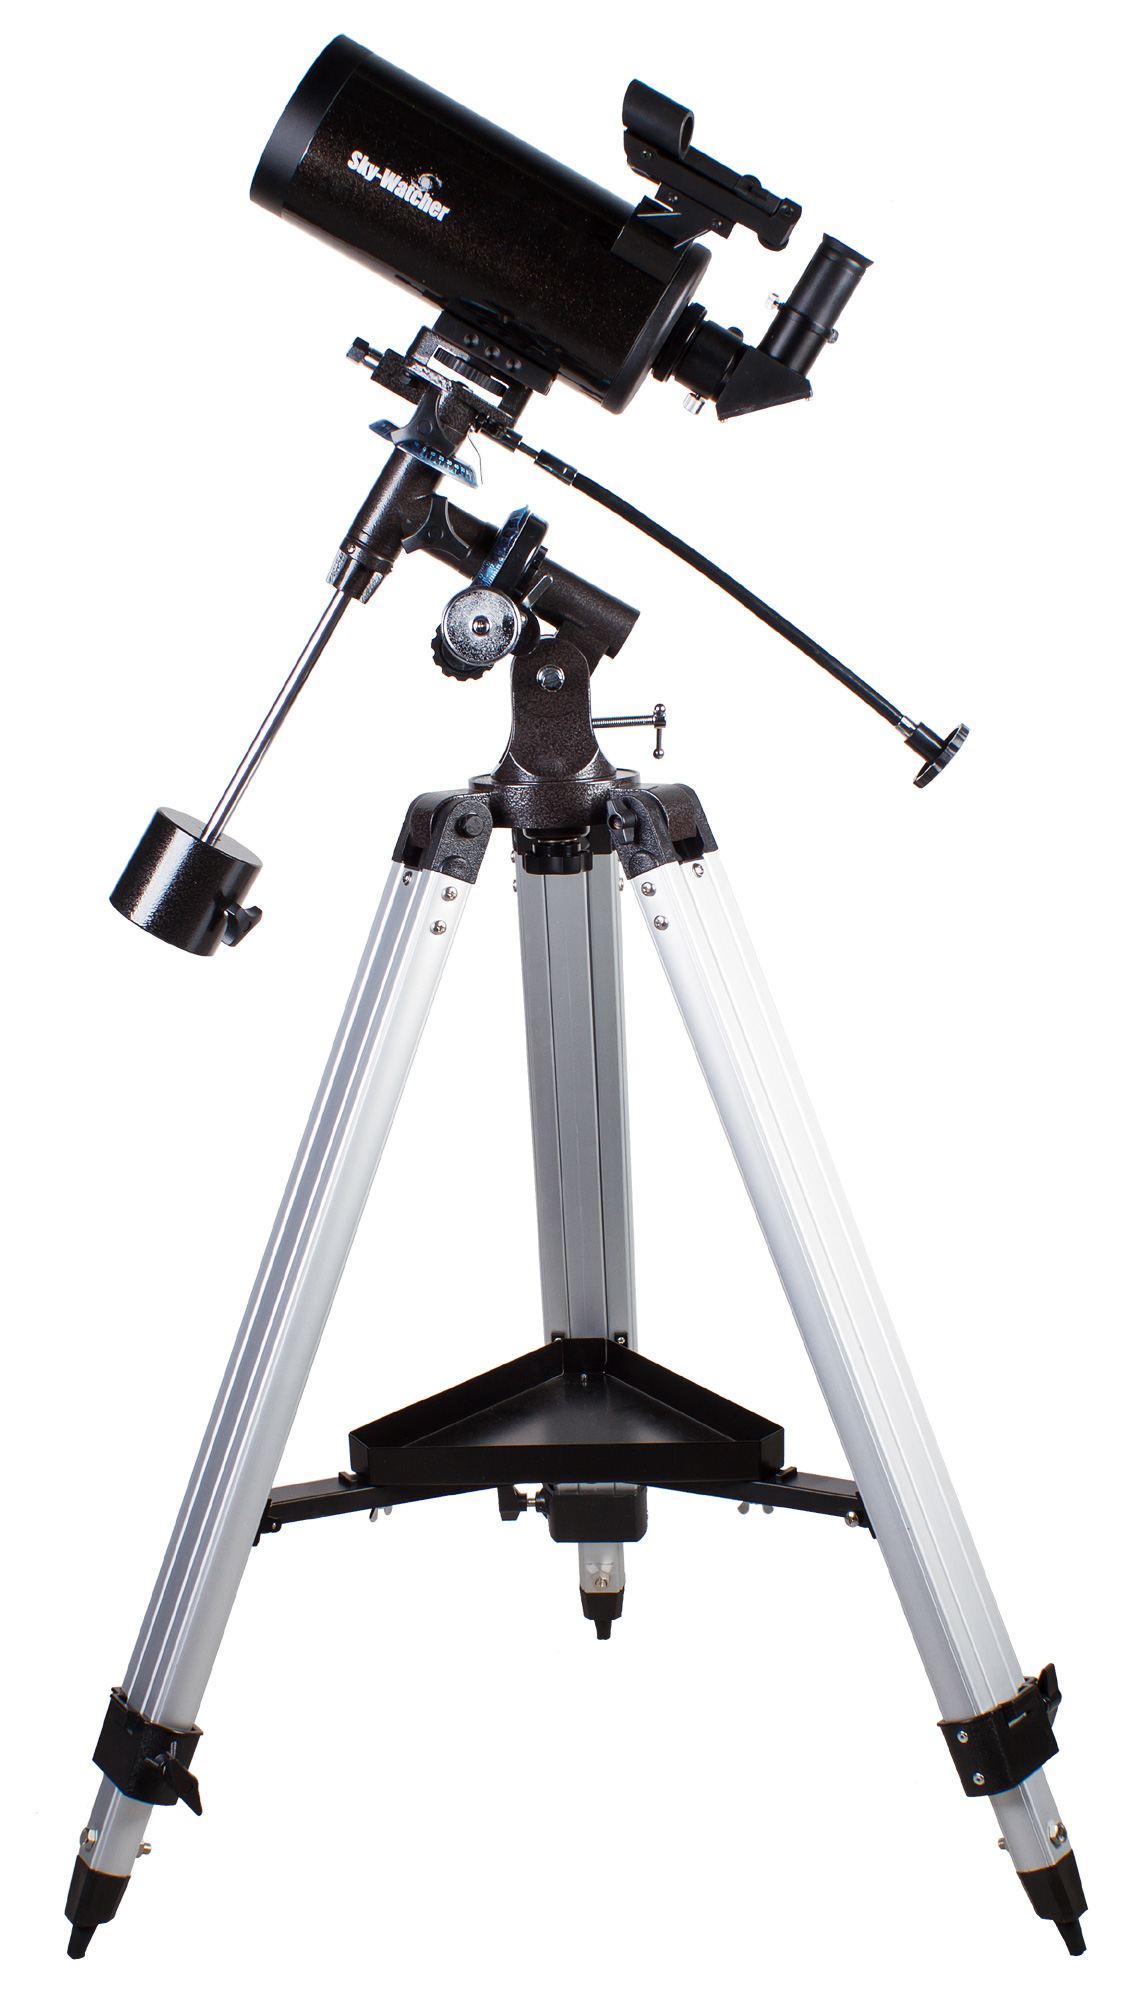 <p>Зеркально-линзовый телескоп Sky-Watcher BK MAK102EQ2 предназначен для изучения Луны, планет Солнечной системы и объектов дальнего космоса. Качественная оптика обеспечивает передачу четкого и чистого изображения. Экваториальная монтировка позволяет компенсировать суточное движение объектов.</p><p><strong>Оптика</strong></p><p>Эта модель собрана по оптической схеме Максутова-Кассегрена, благодаря чему труба отличается небольшими размерами. Телескоп комплектуется двумя окулярами. Для поиска объектов и обзорных наблюдений рекомендуется использовать окуляр с фокусным расстоянием 20 мм. Окуляр 10 мм подходит для более подробного изучения астрономических объектов.</p><p><strong>Монтировка</strong></p><p>Оптическая труба устанавливается на экваториальную монтировку. Такая монтировка несколько сложнее в управлении, чем азимутальная, однако она позволяет с высокой точностью вести объект во время наблюдений. Благодаря надежной алюминиевой треноге конструкция очень устойчива. </p>